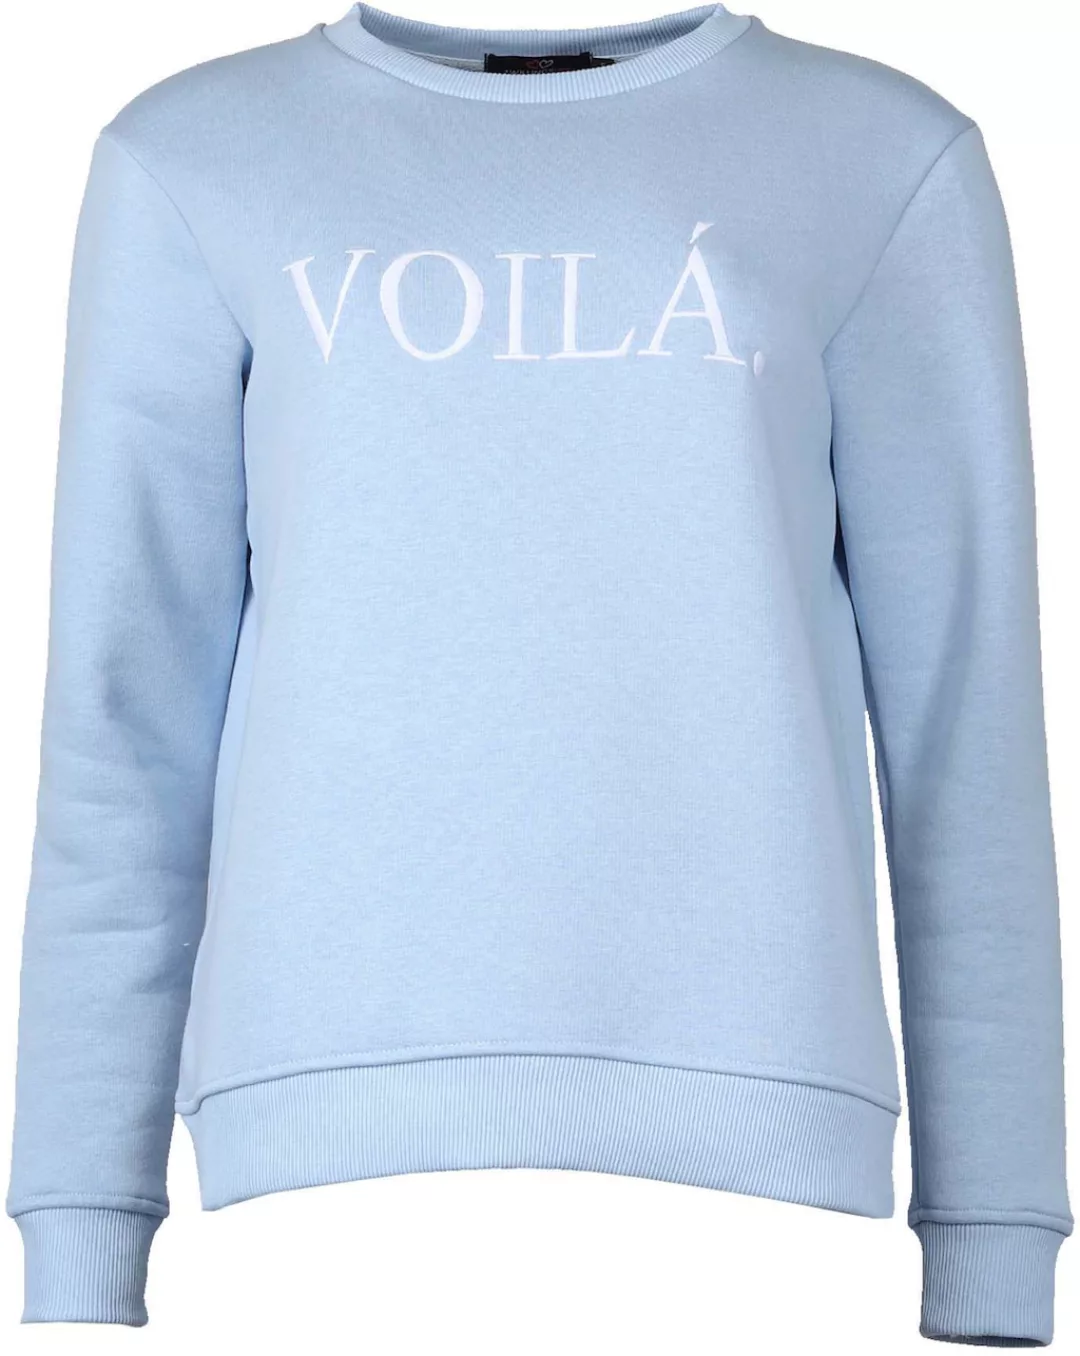 Zwillingsherz Sweatshirt Voilà mit Aufdruck, schlichtes Design günstig online kaufen